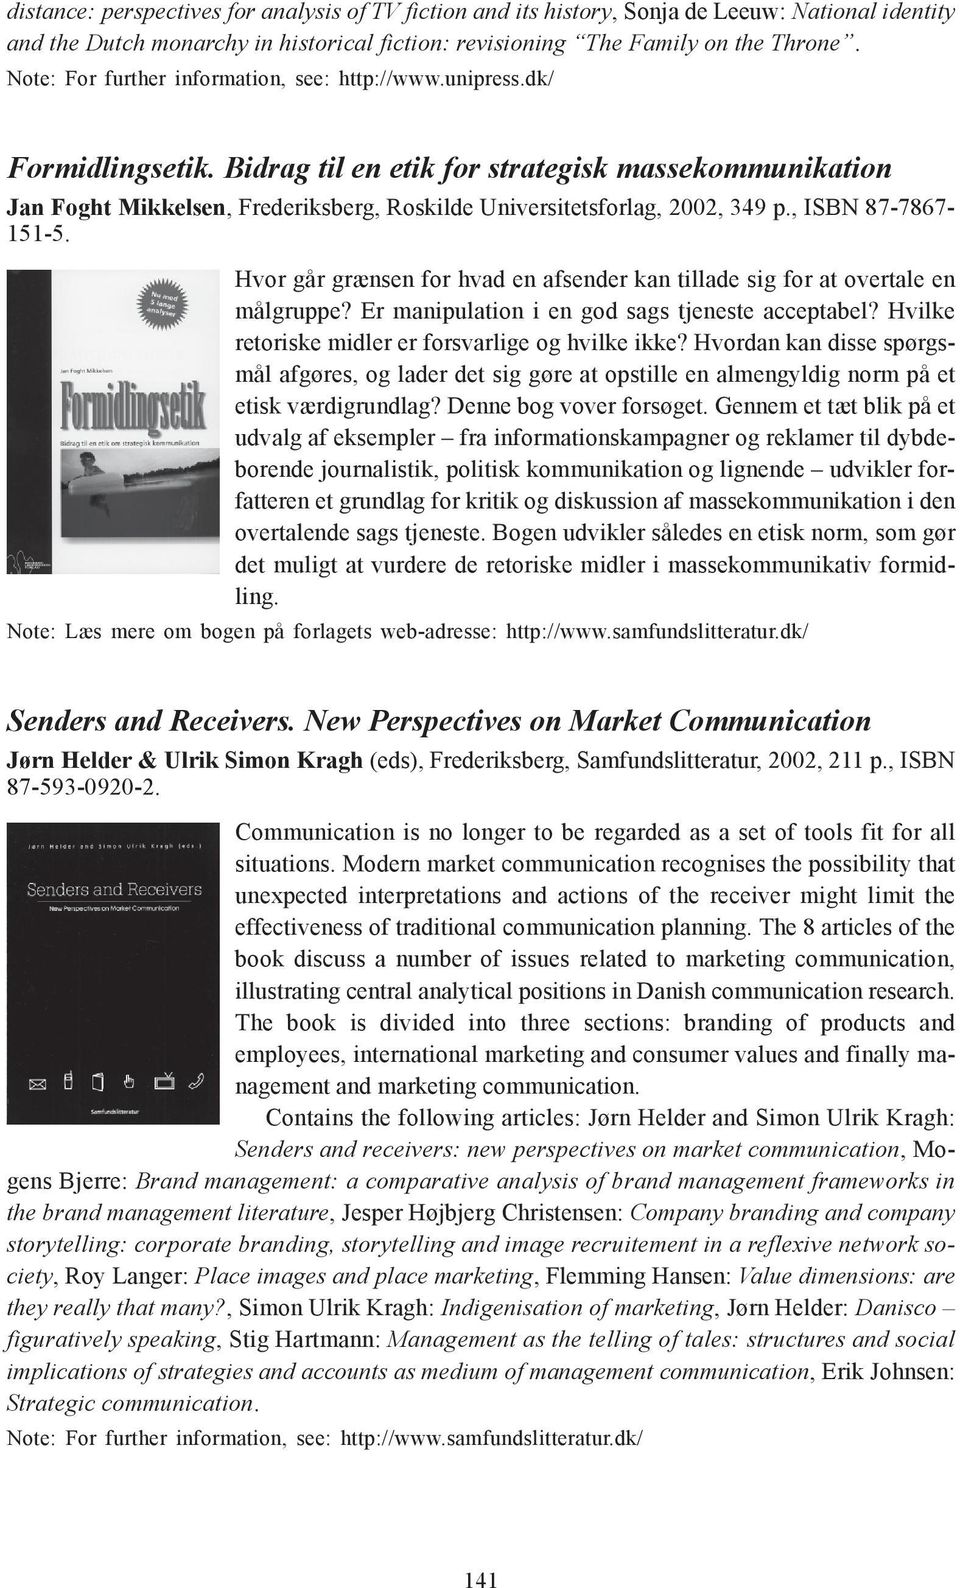 Bidrag til en etik for strategisk massekommunikation Jan Foght Mikkelsen, Frederiksberg, Roskilde Universitetsforlag, 2002, 349 p., ISBN 87-7867- 151-5.